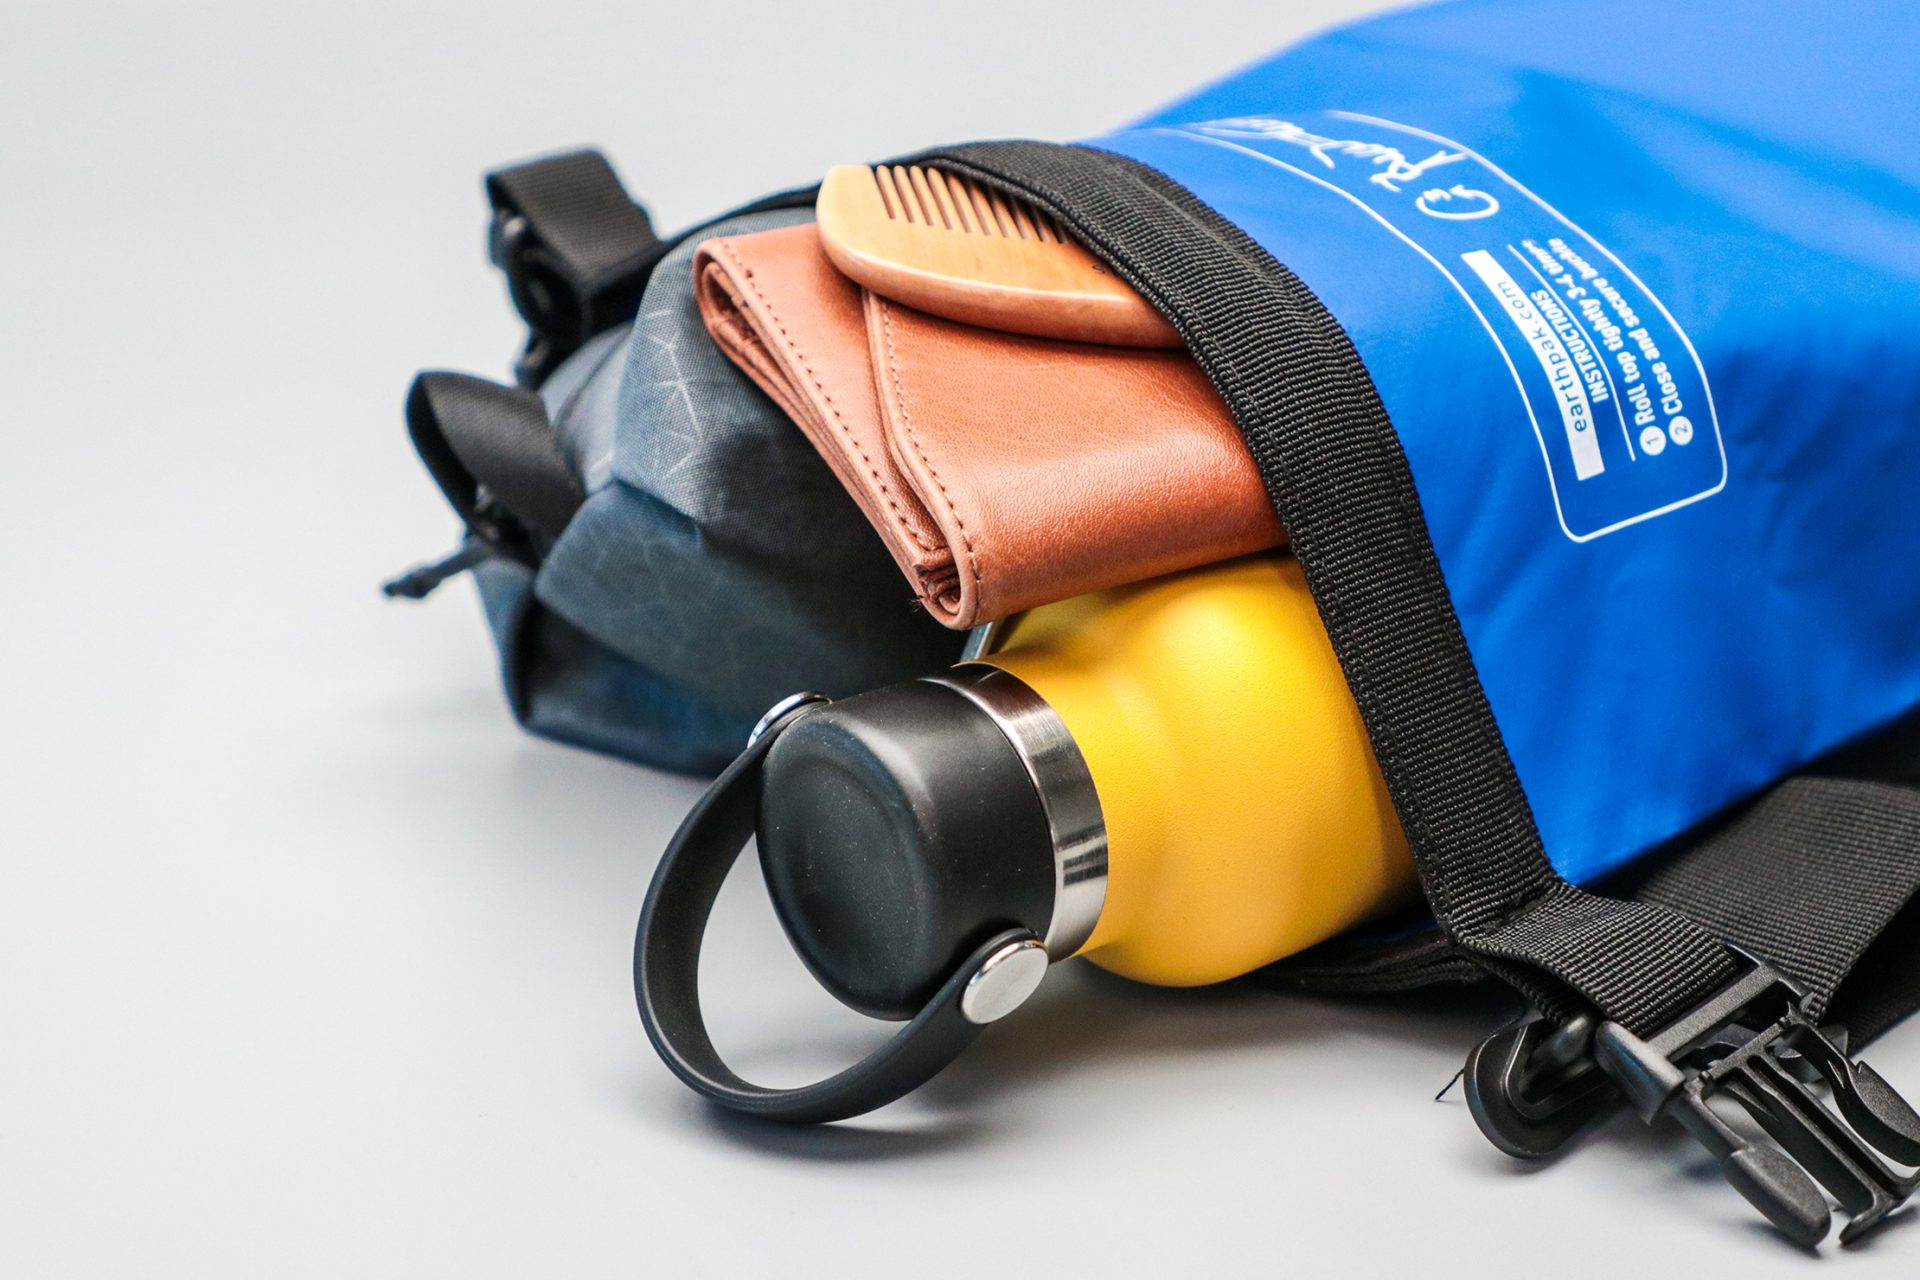 Earth Pak Original Waterproof Dry Bag Packed With Gear